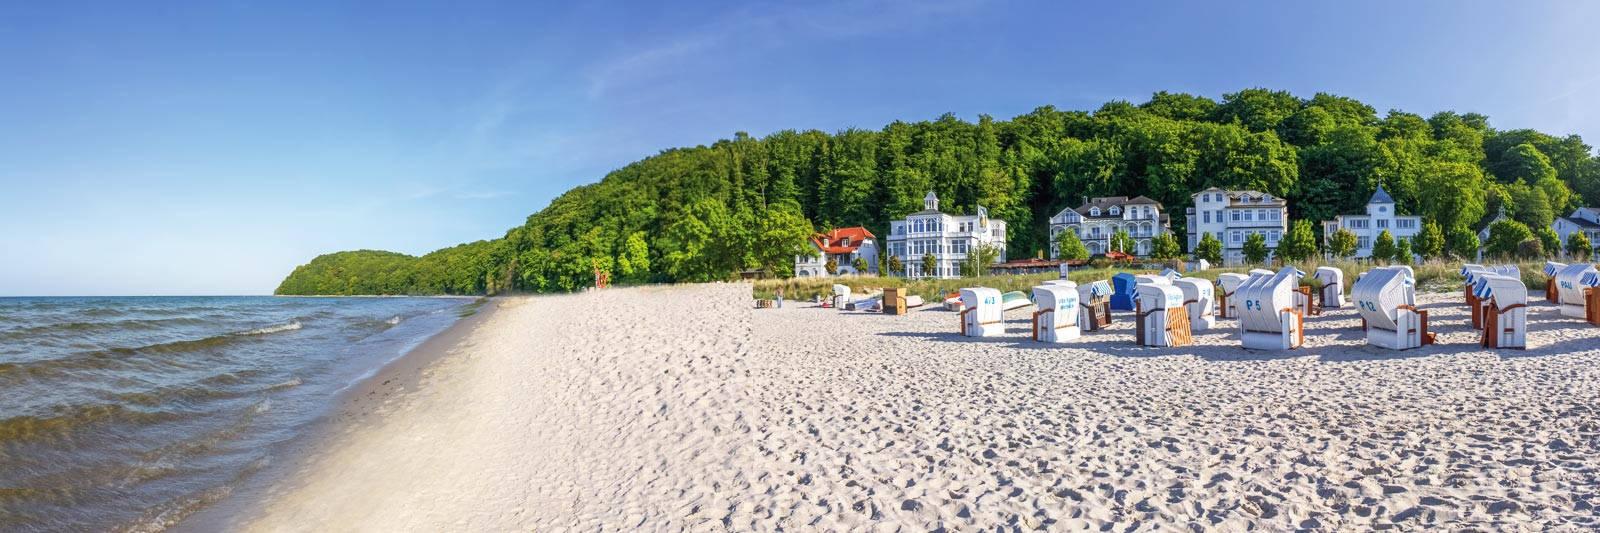 Ferienparks und Ferienanlagen in Mecklenburg-Vorpommern - 38.211 Ferienwohnungen und Ferienhäuser - tourist-online.de